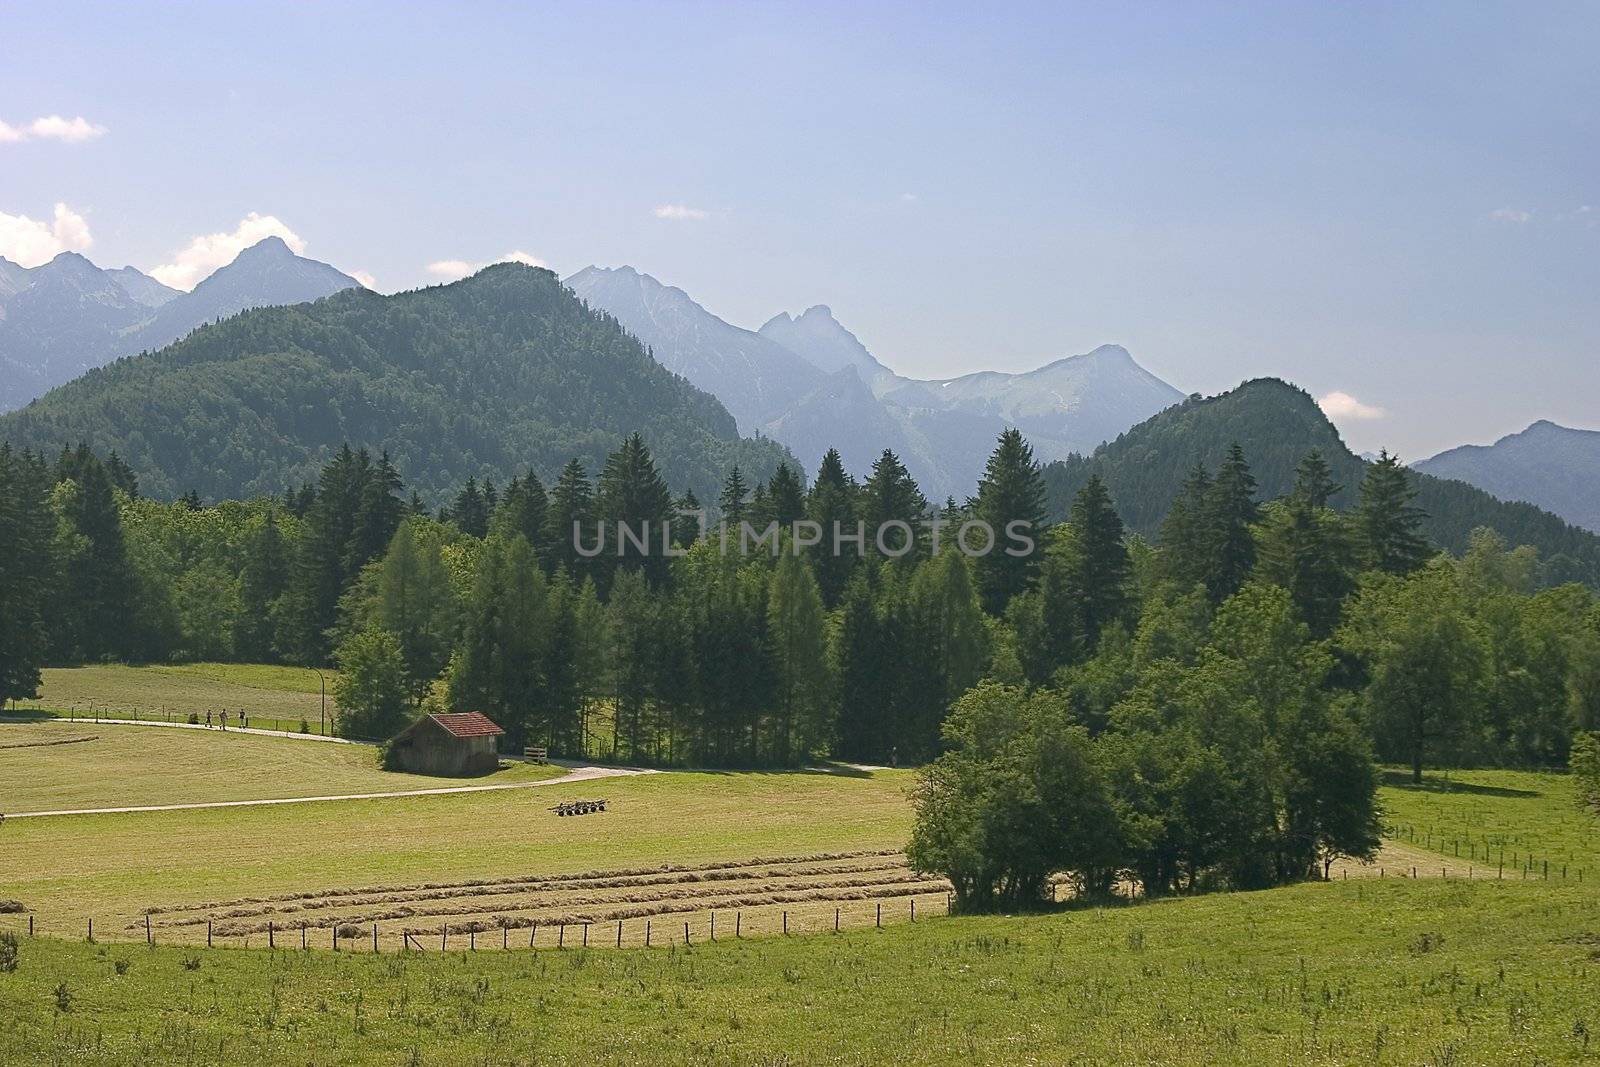 Beautiful pasture and mountains in Germany ( Allgäu )
Schöne Weide und Berge in Deutschland
